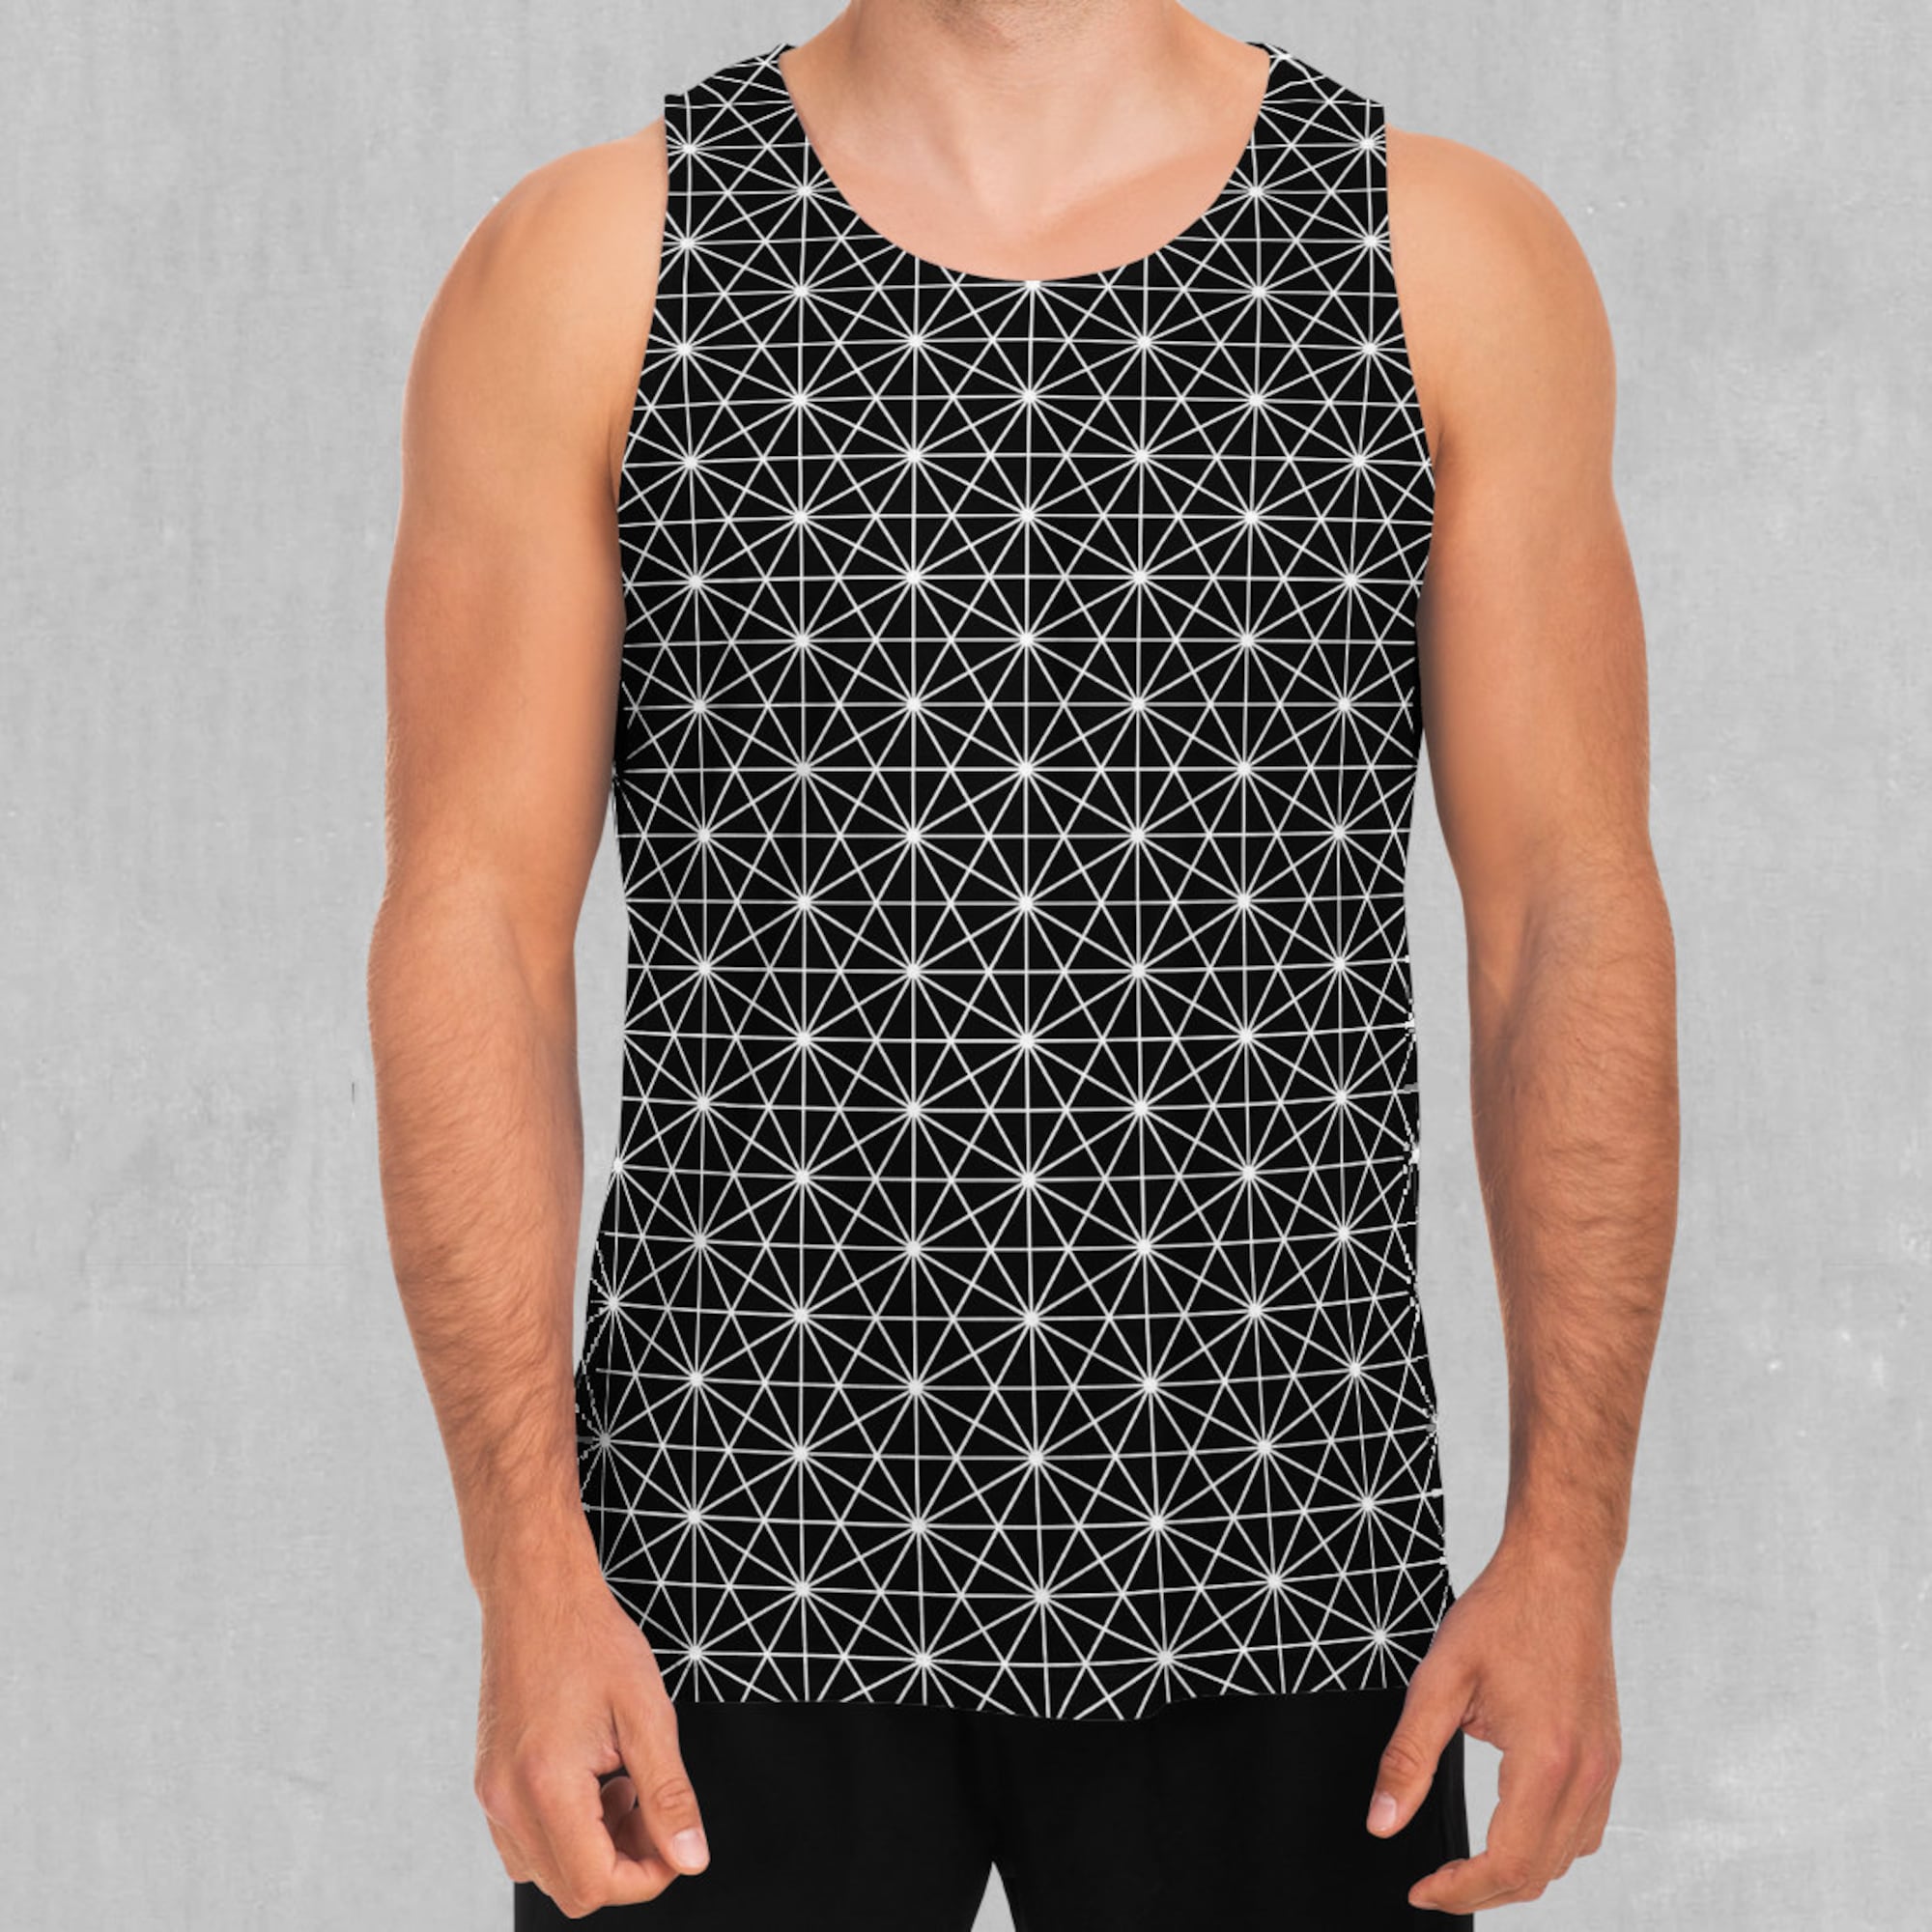 Star Net Men's Tank Top Muscle Sleeveless Shirt